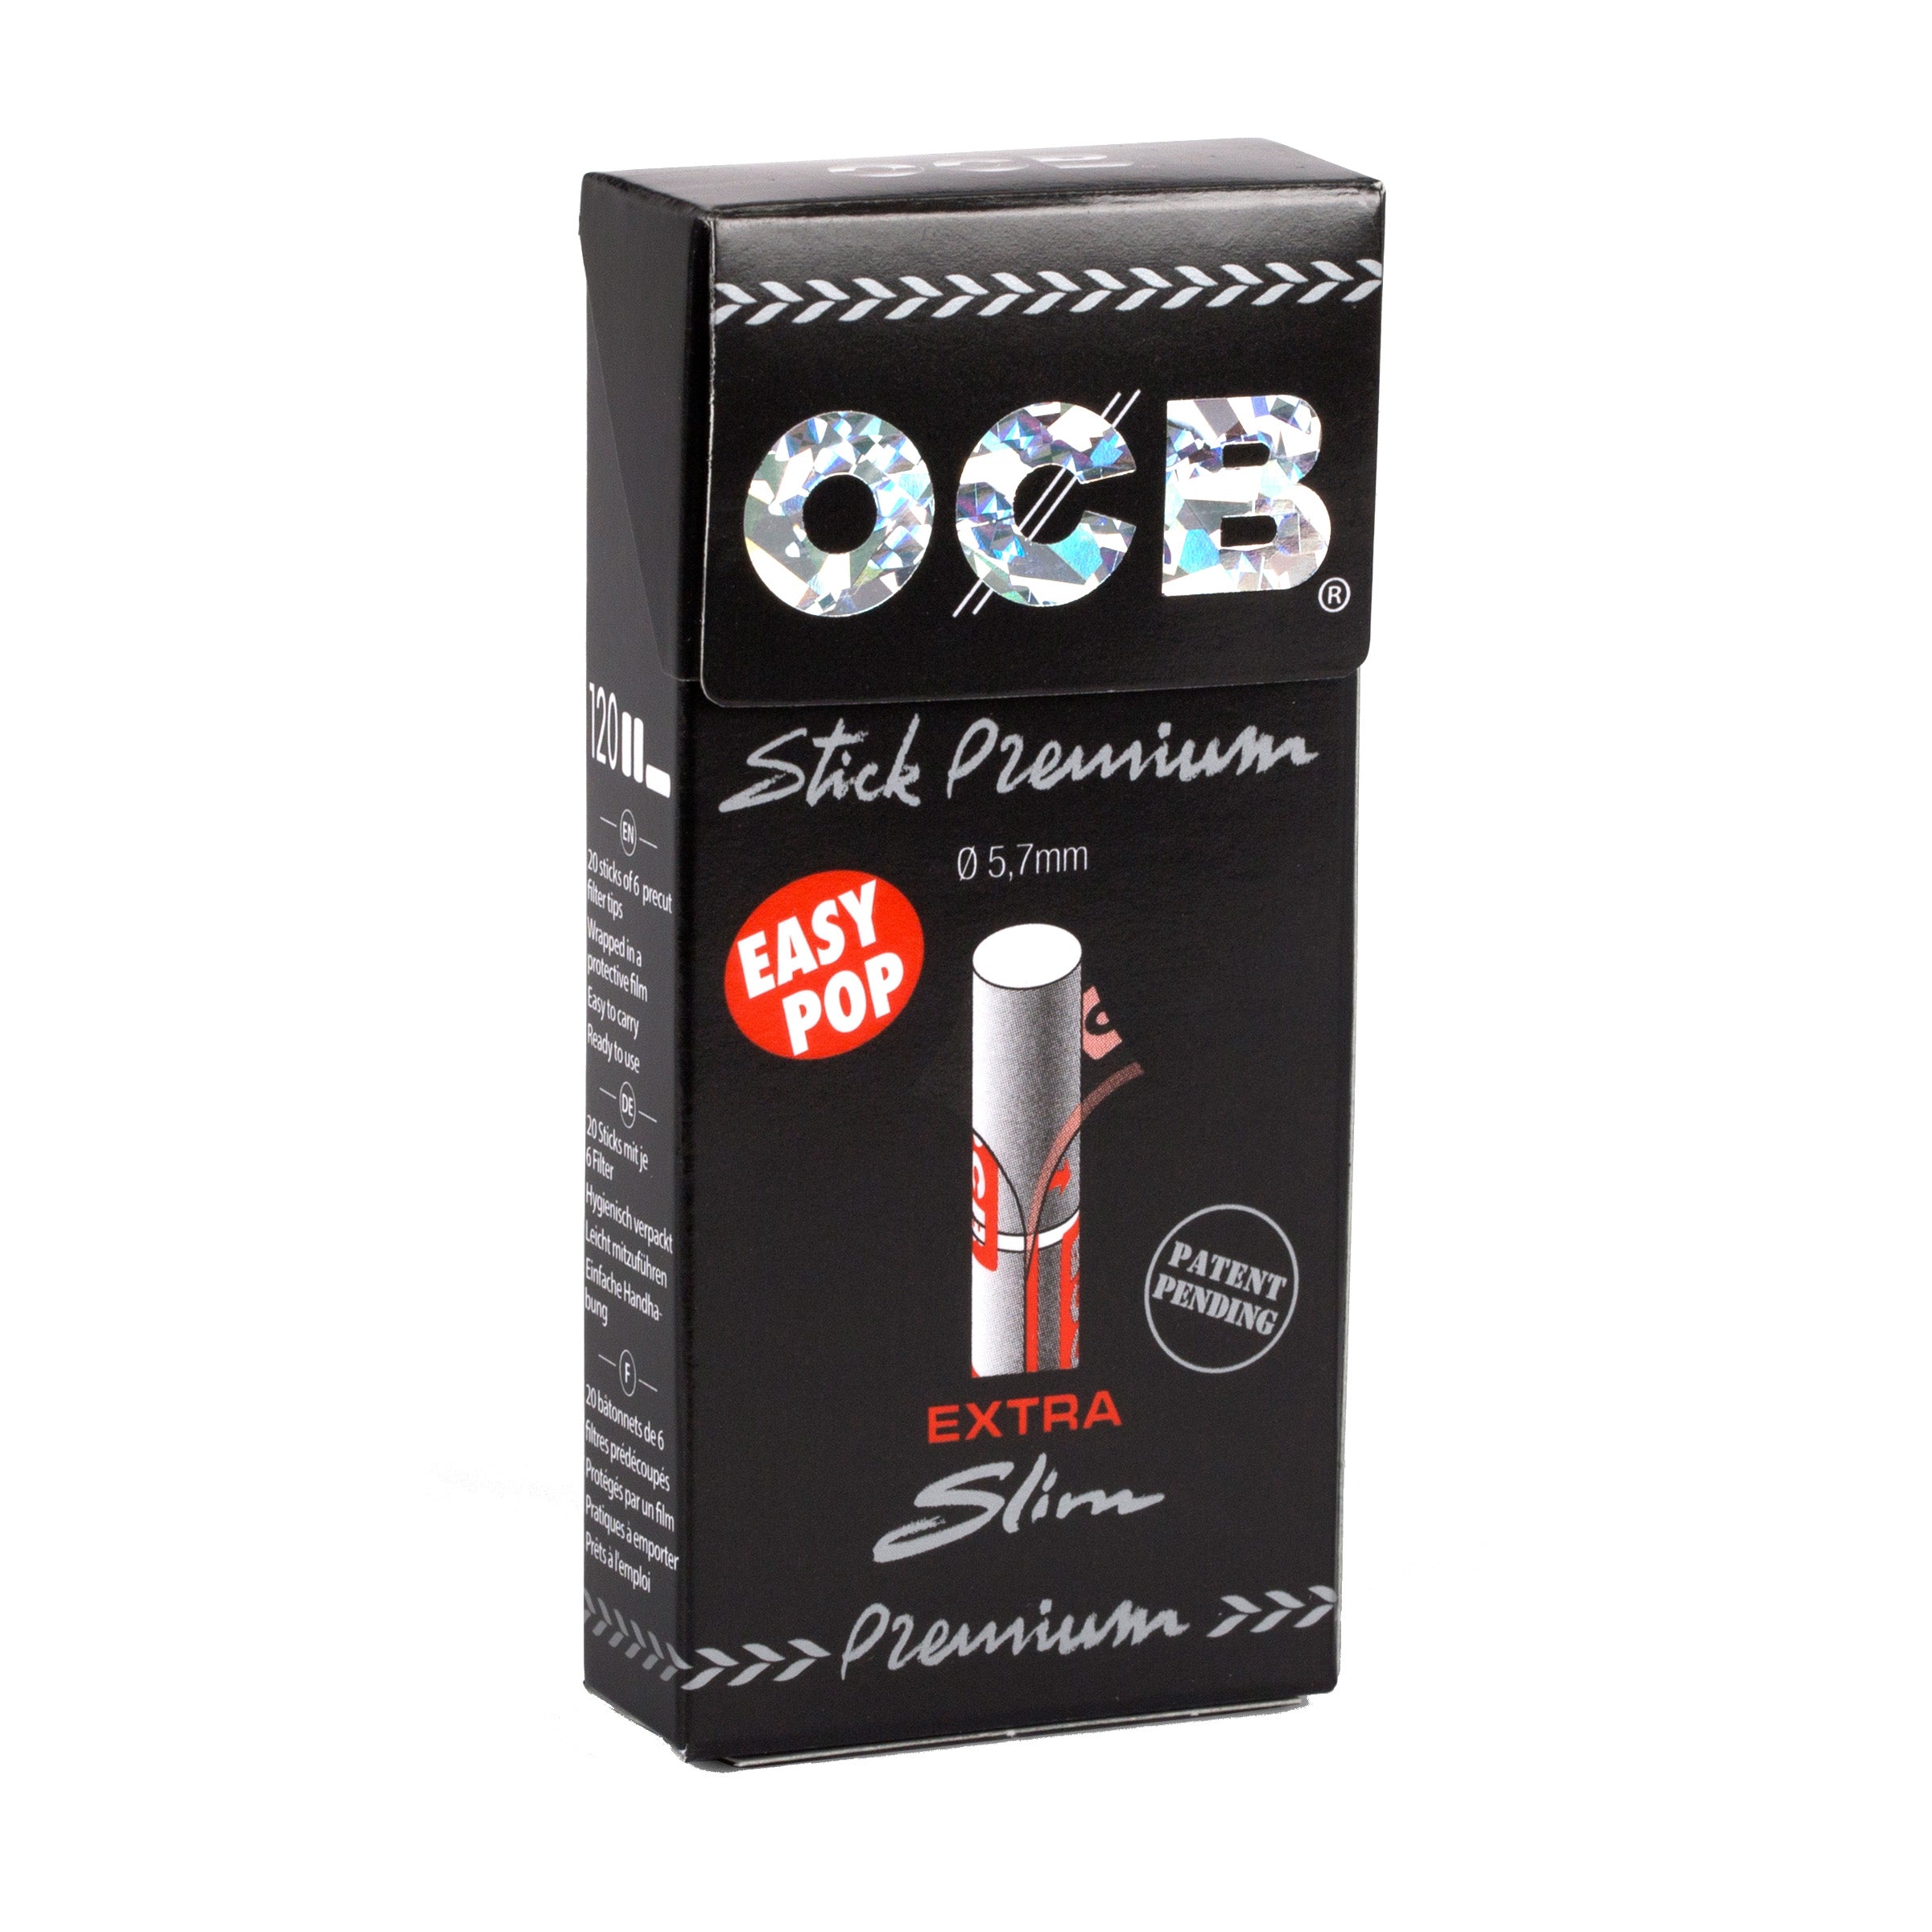 OCB Black Premium Rolling Filters